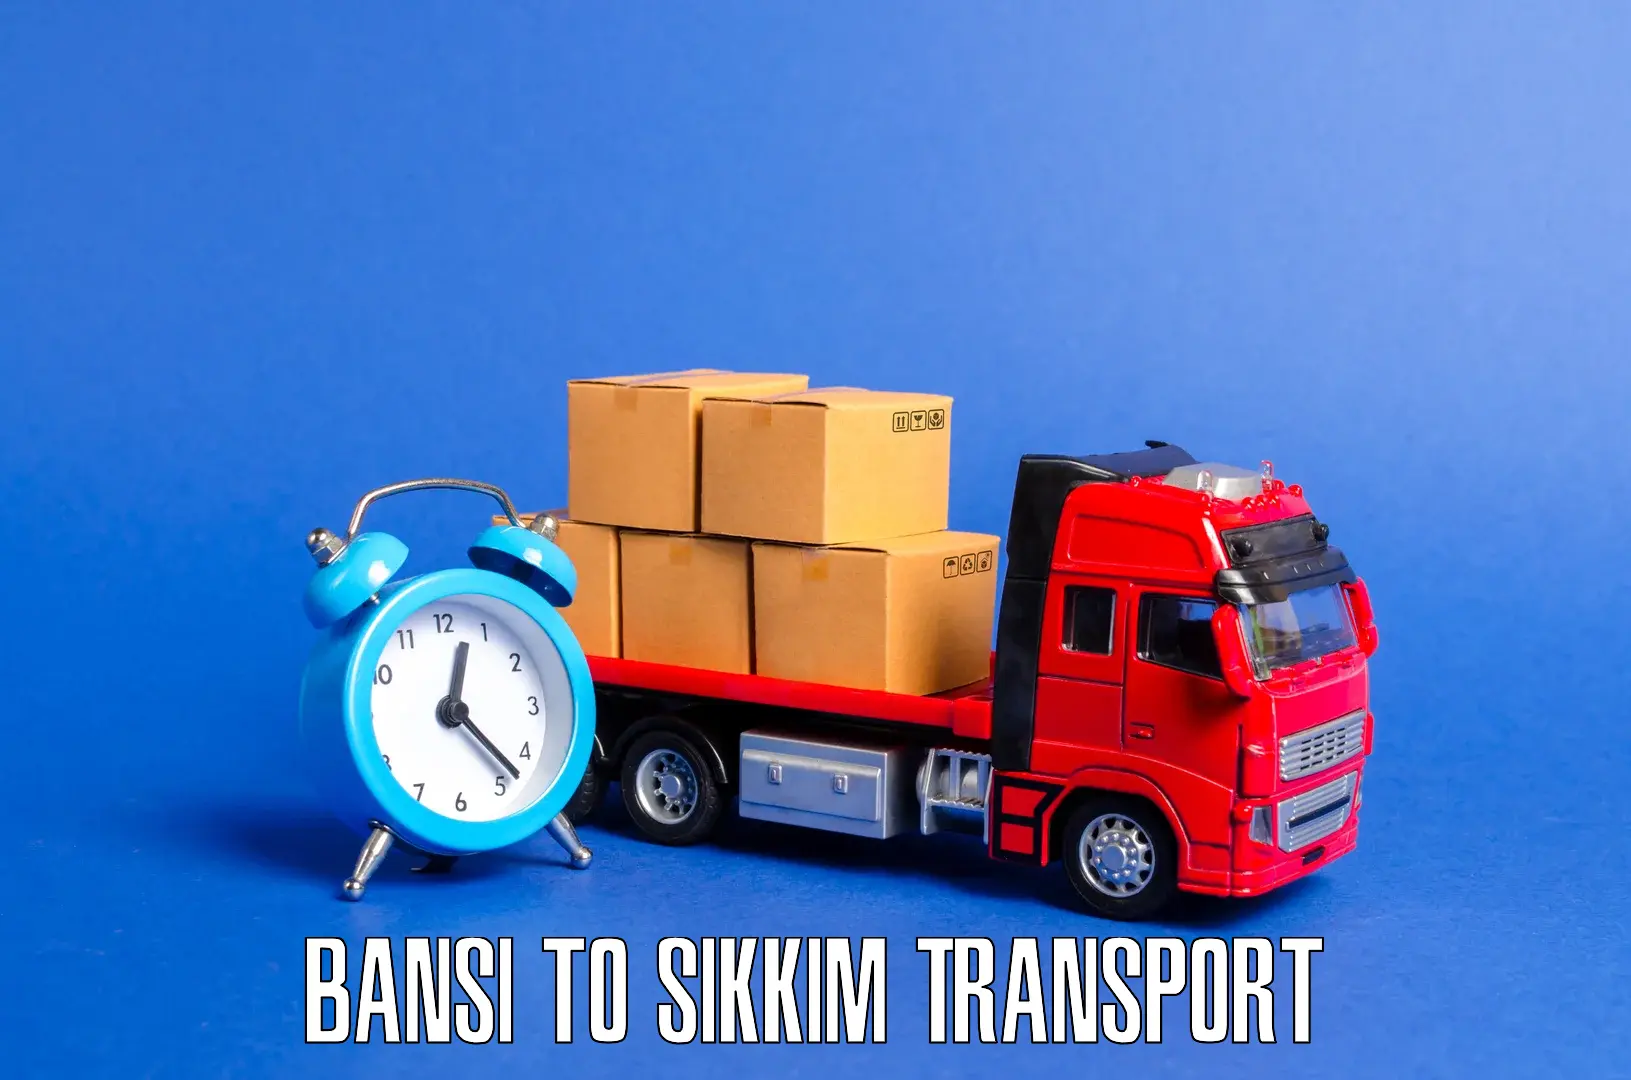 Online transport booking Bansi to Pelling